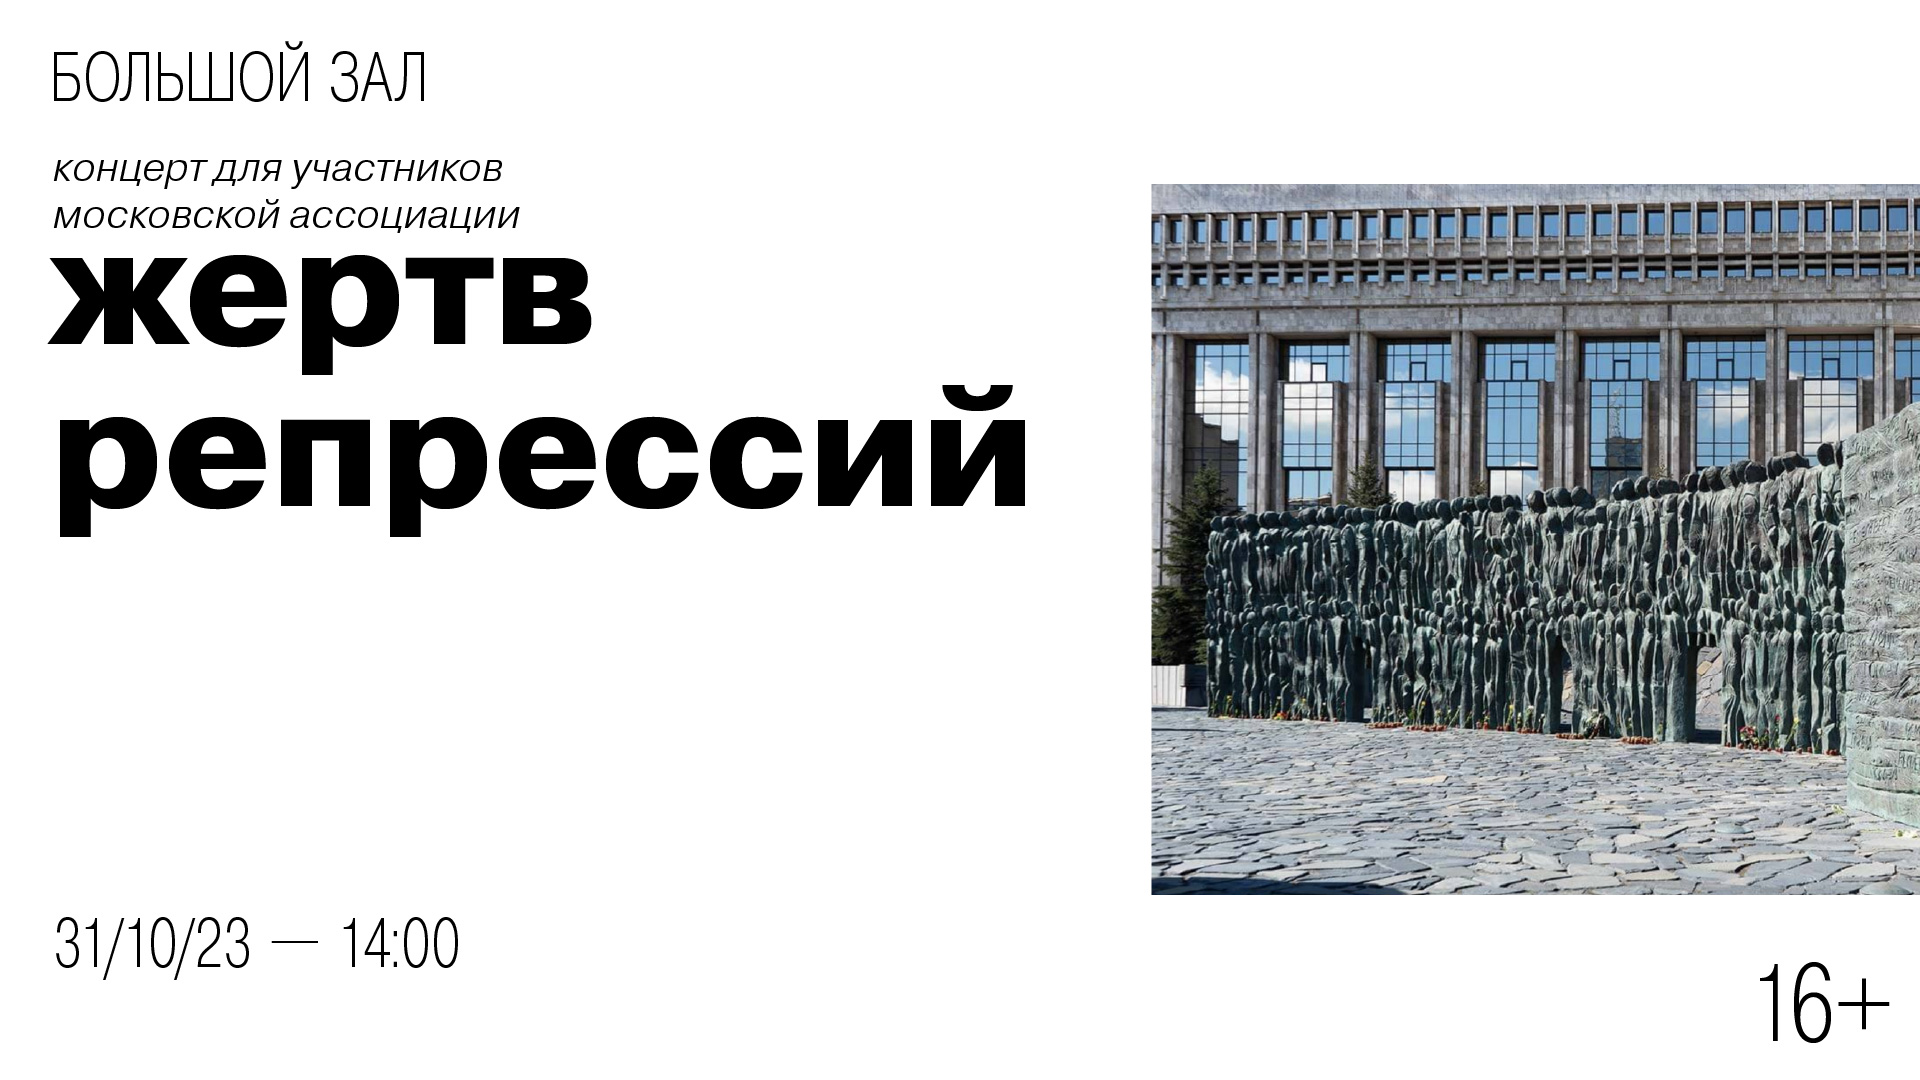 Концерт для участников Демократического Московского социального движения жертв политических репрессий